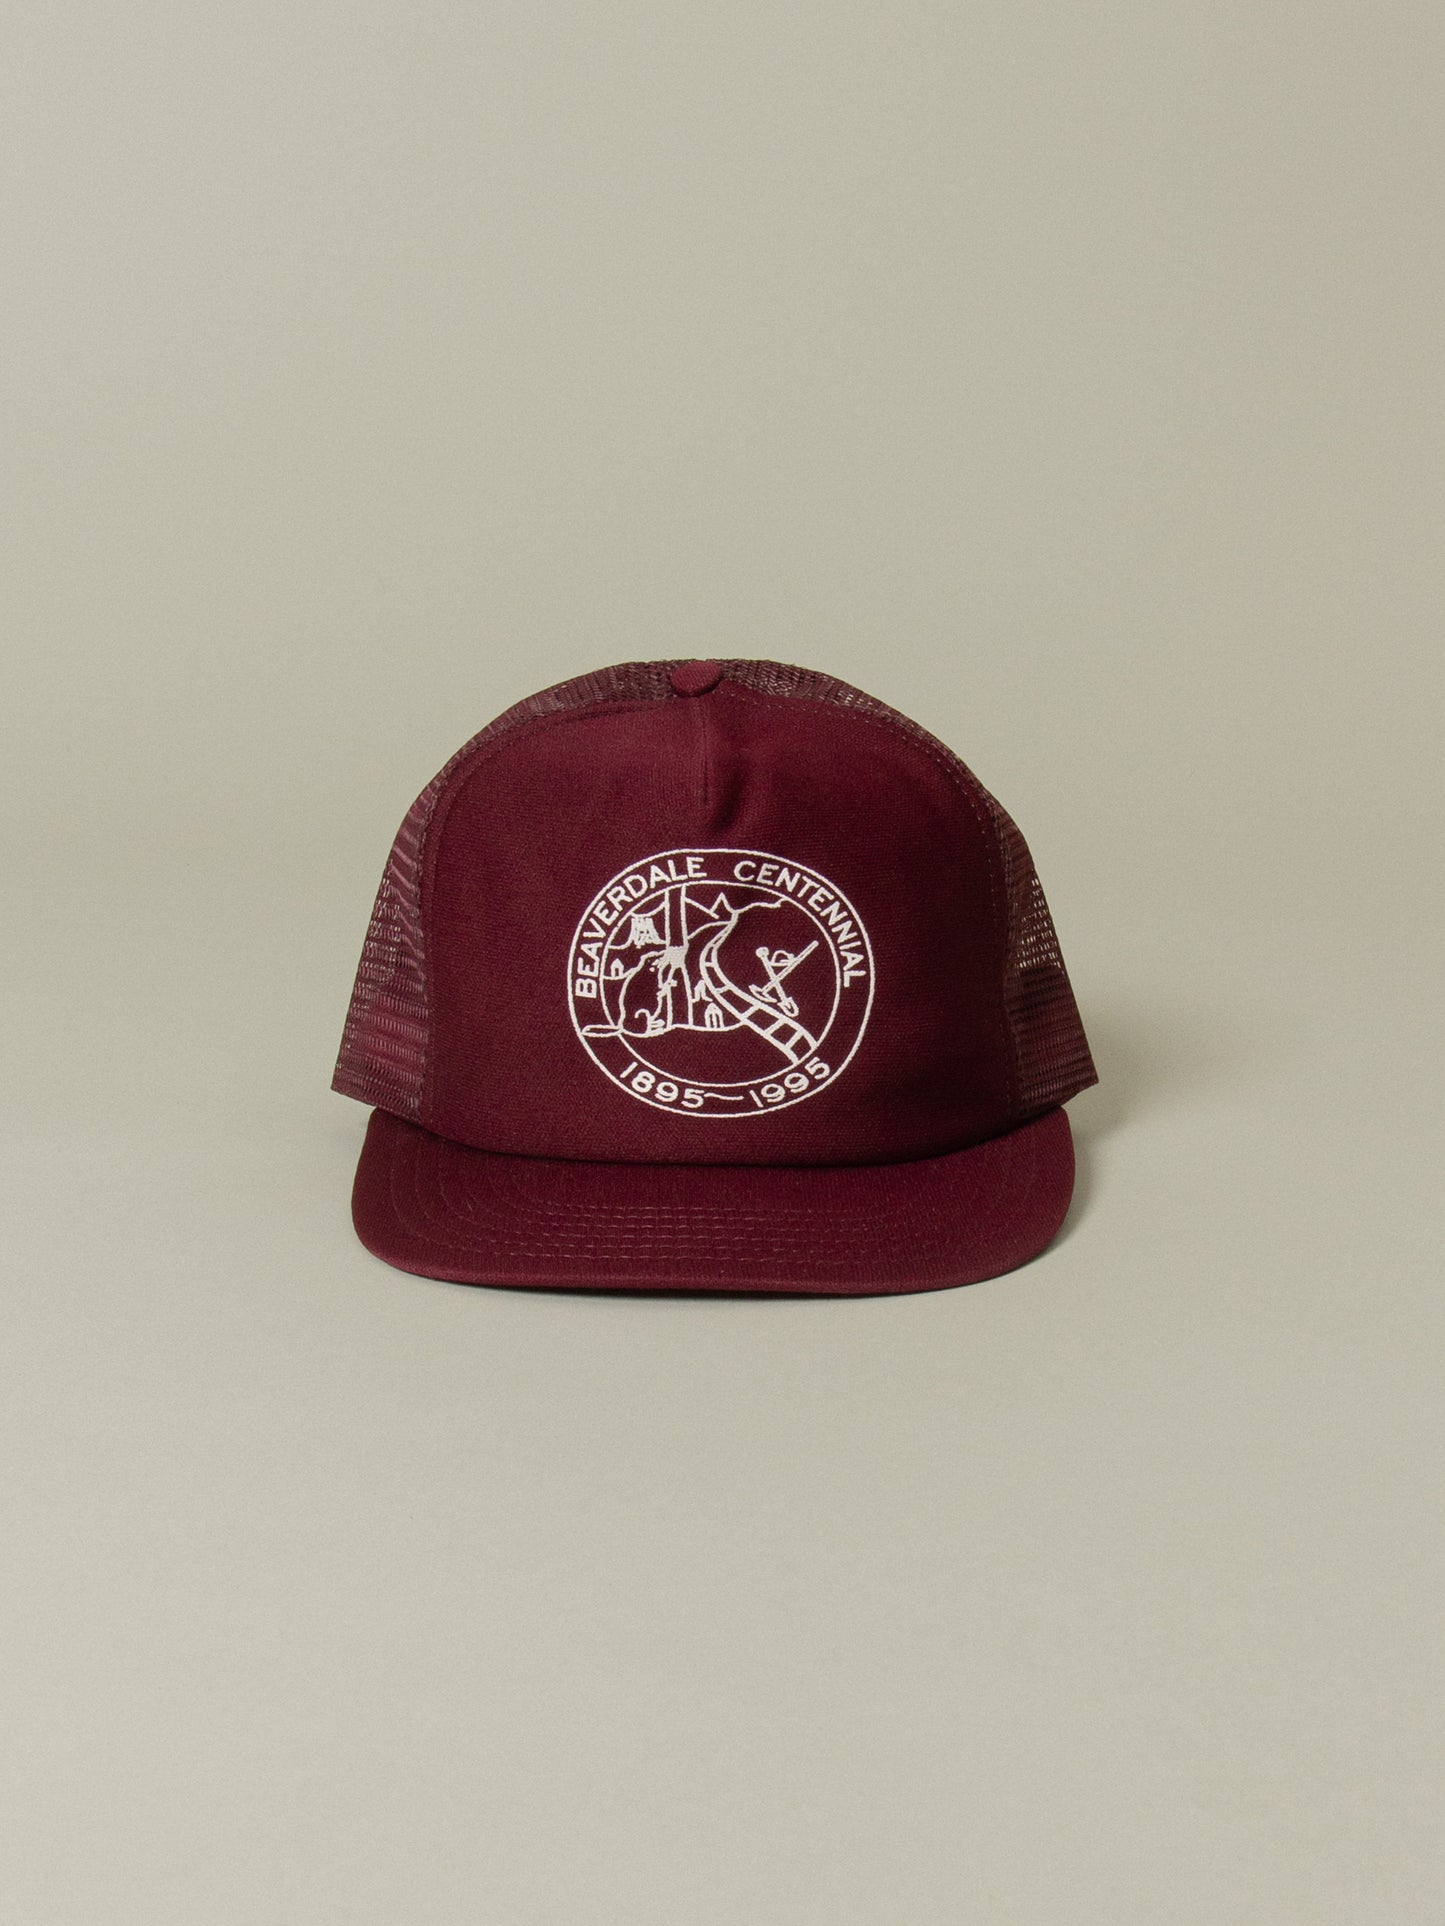 Vtg 1990s Burgundy Beaverdale Snapback Cap - Made in USA (OS)